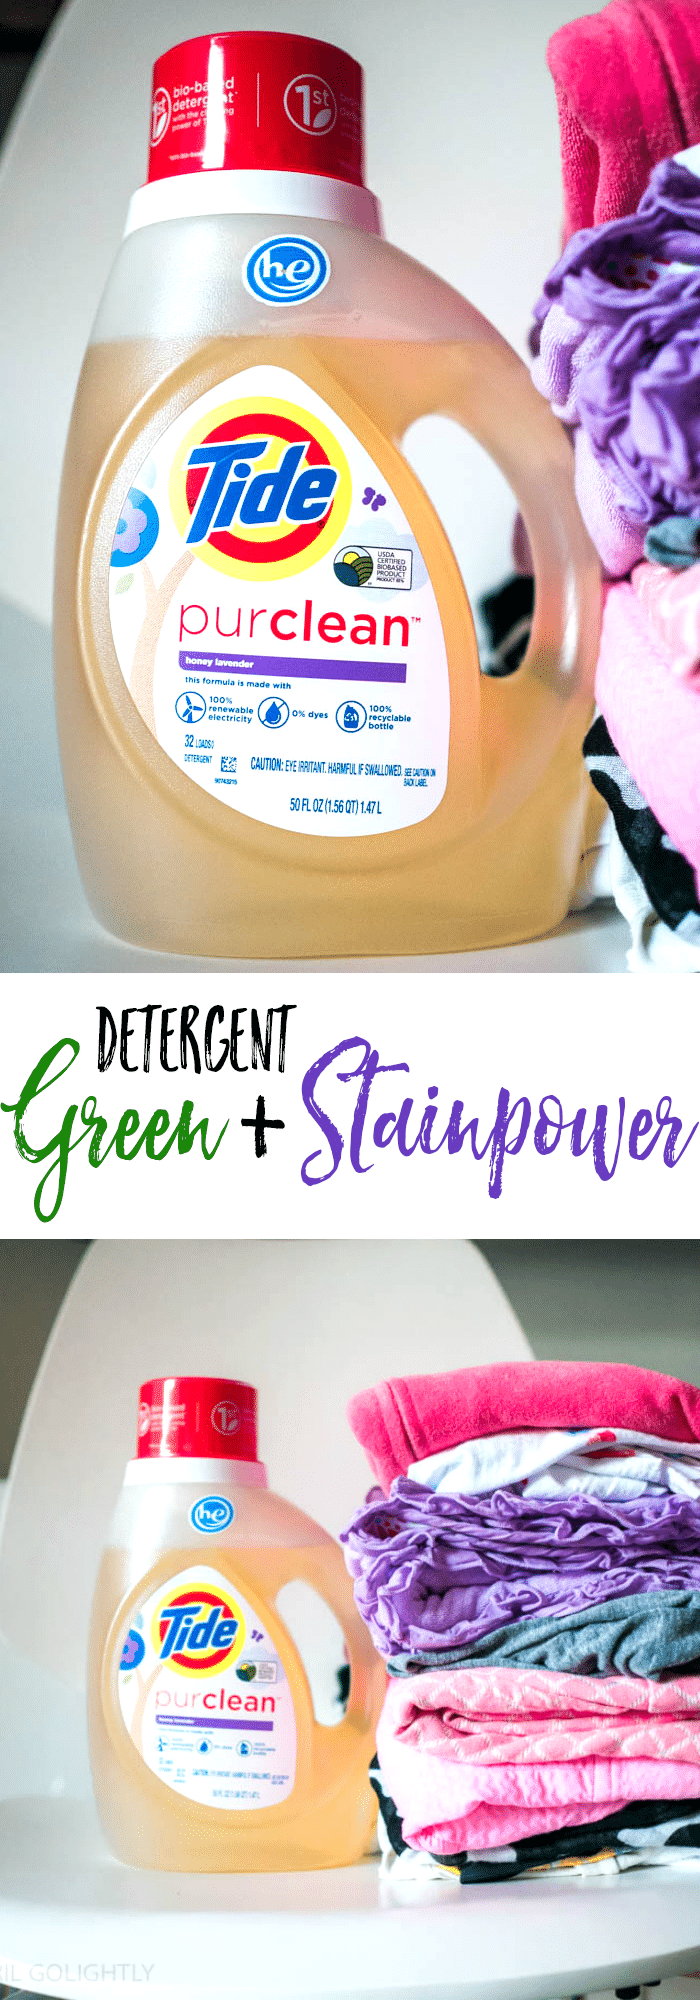 Green-Stainpower-detergent